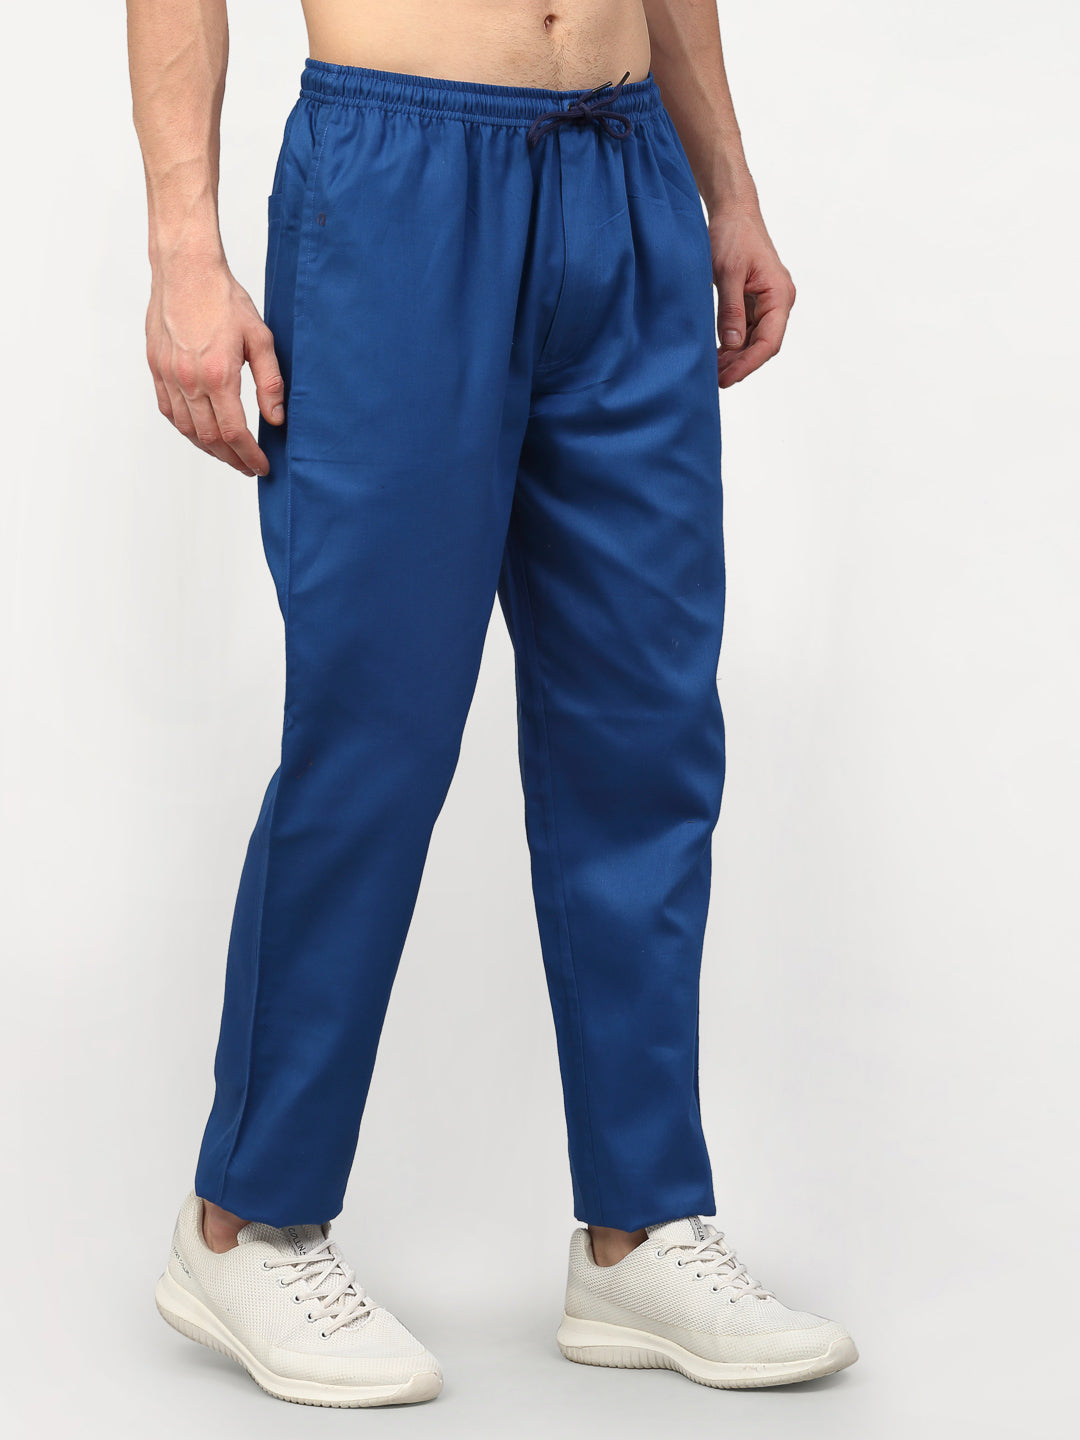 Jainish Men's Cotton Solid Track Pants - Blue - Distacart